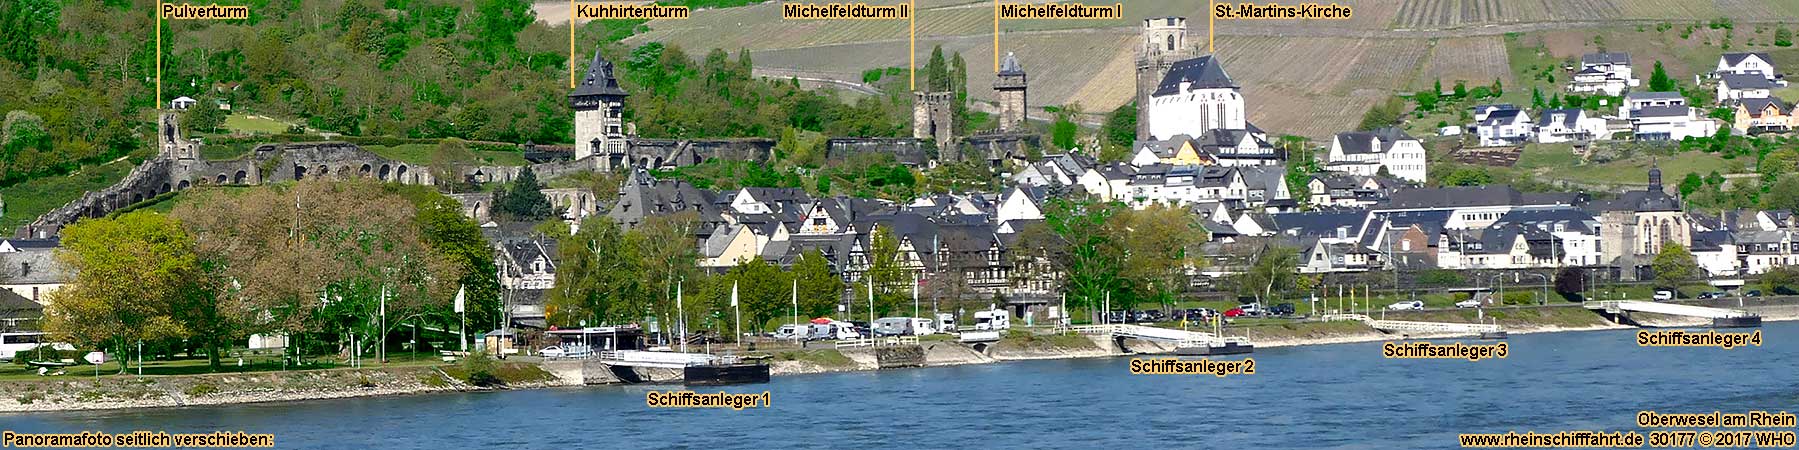 Oberwesel am Rhein mit 4 Schiffsanlegern. Blick von der rechten Rheinseite.